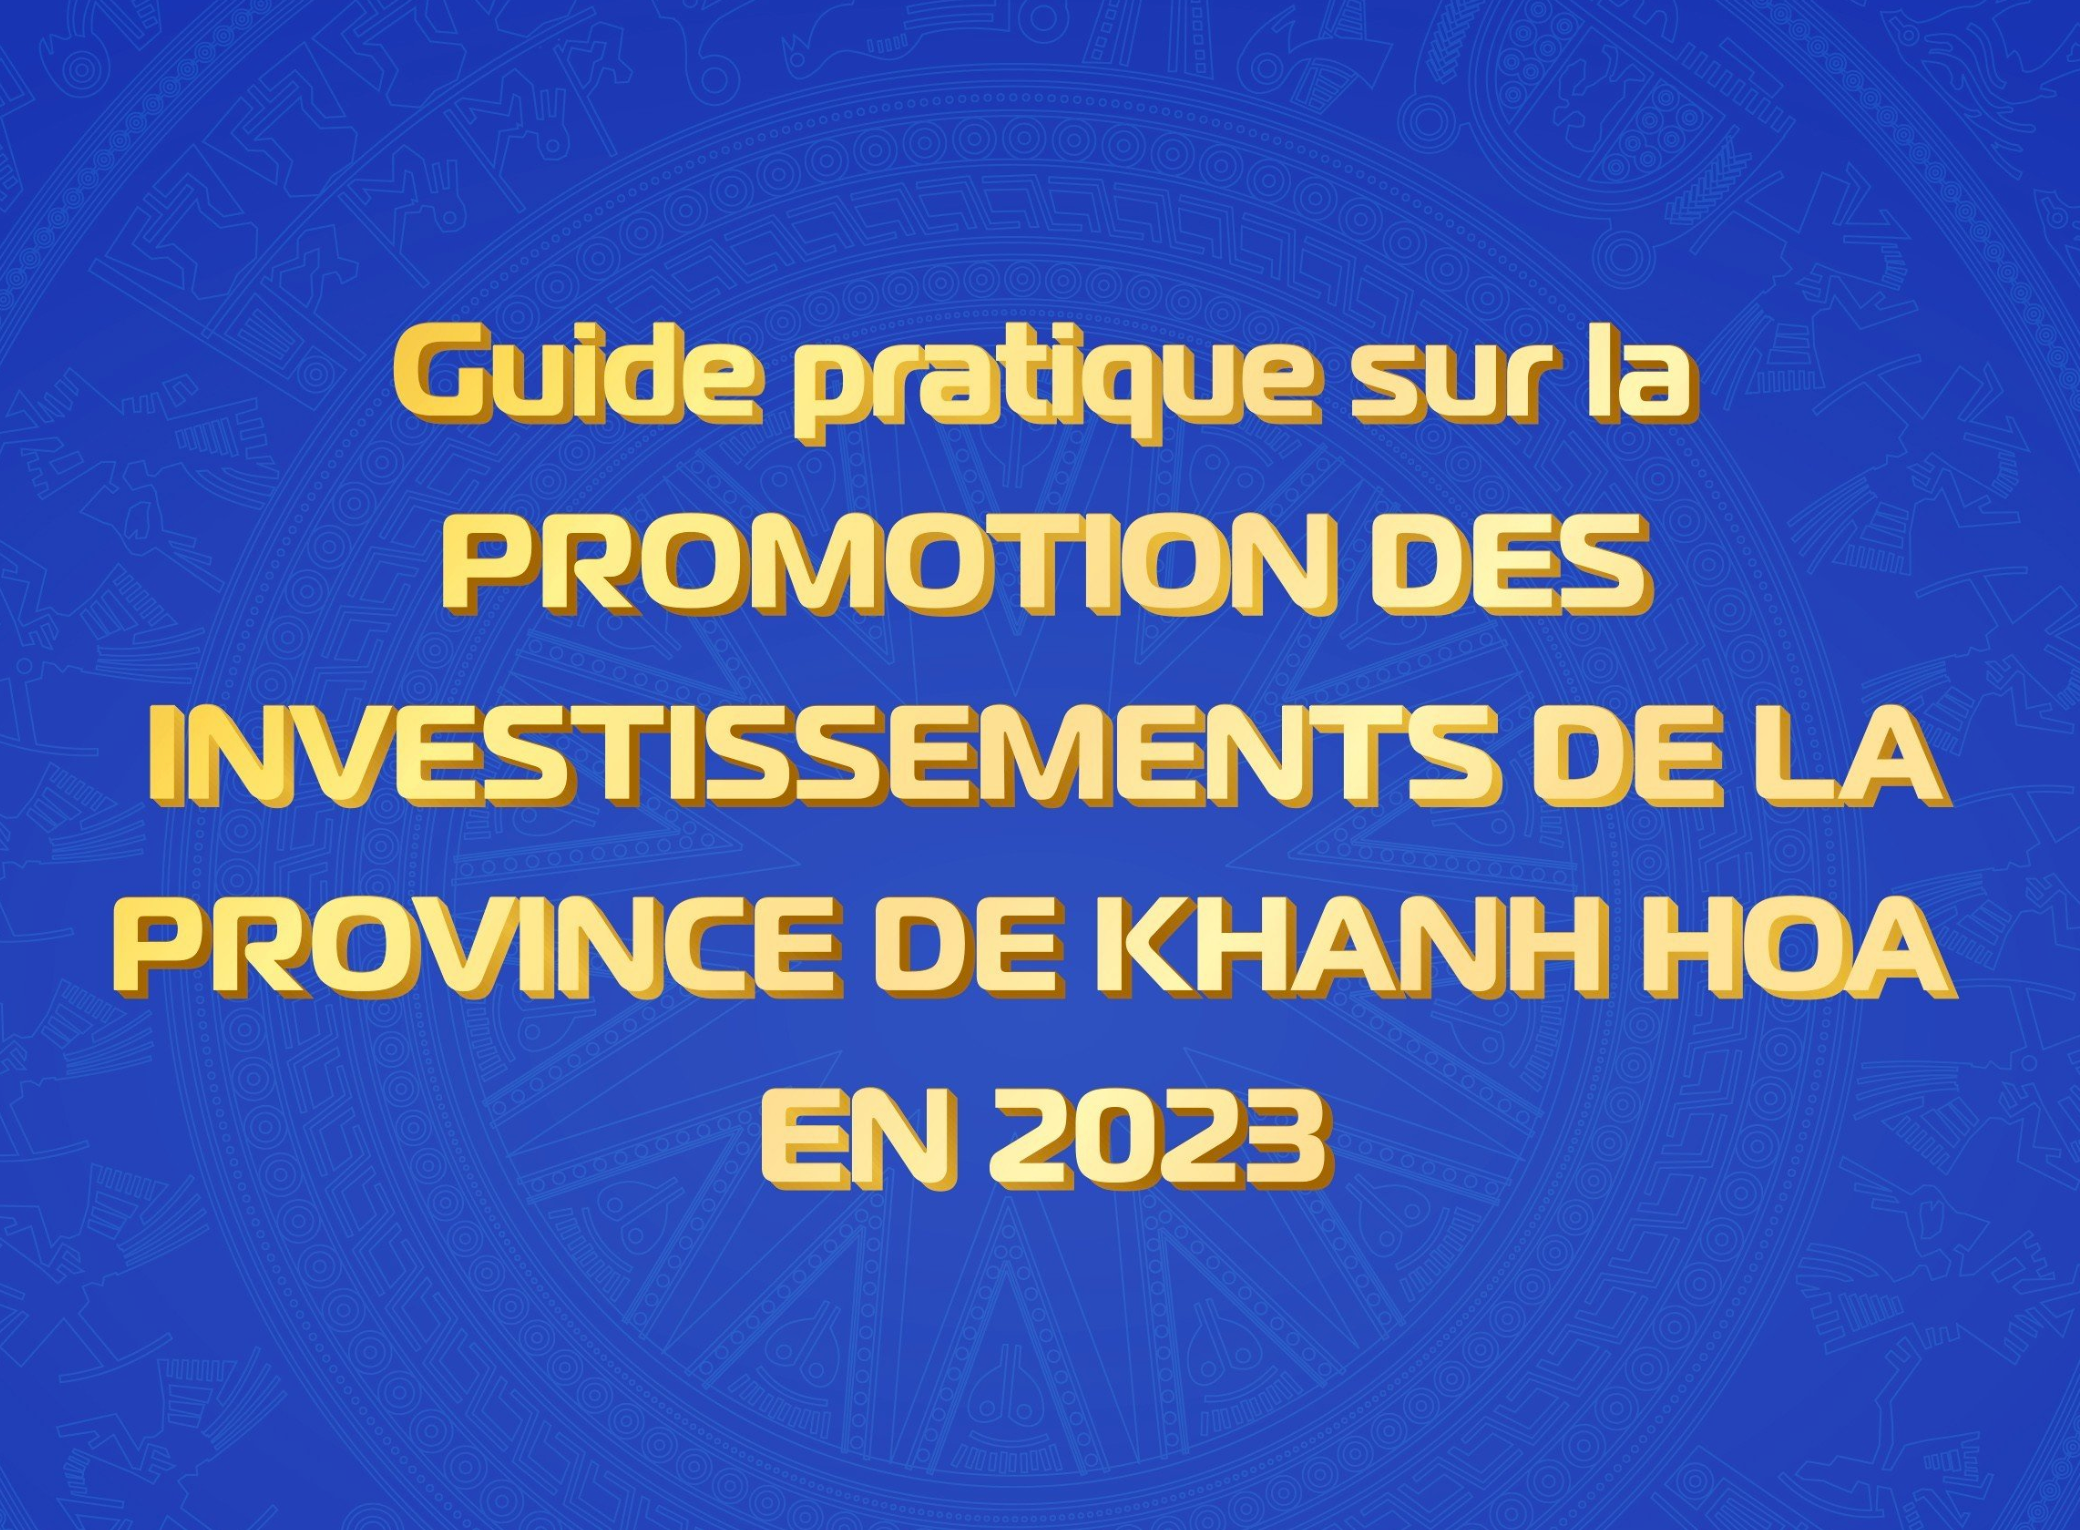 Guide pratique sur la PROMOTION DES INVESTISSEMENTS DE LA PROVINCE DE KHANH HOA EN 2023